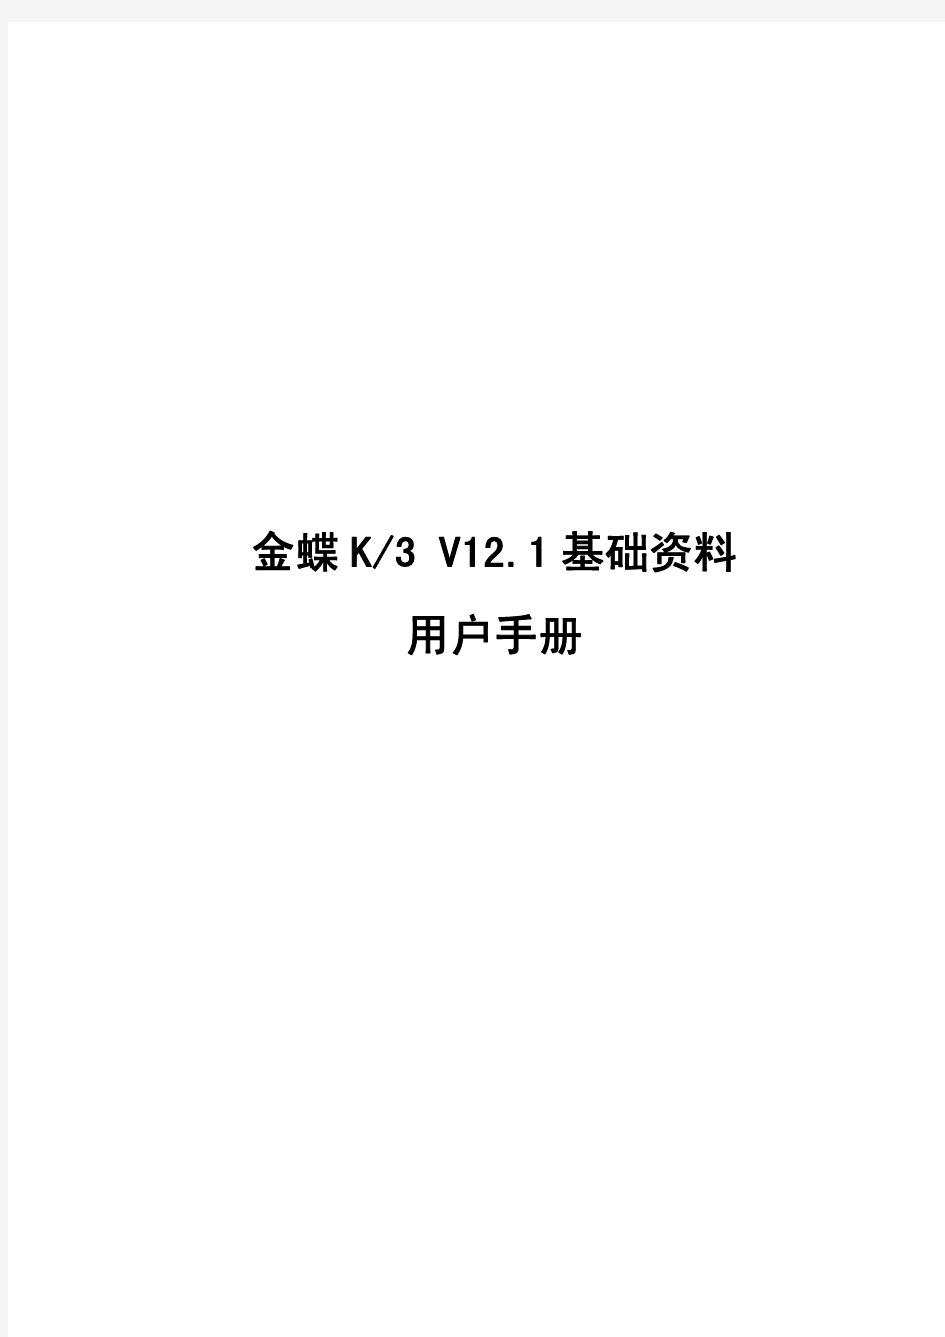 金蝶K3 V12.1 基础资料用户手册